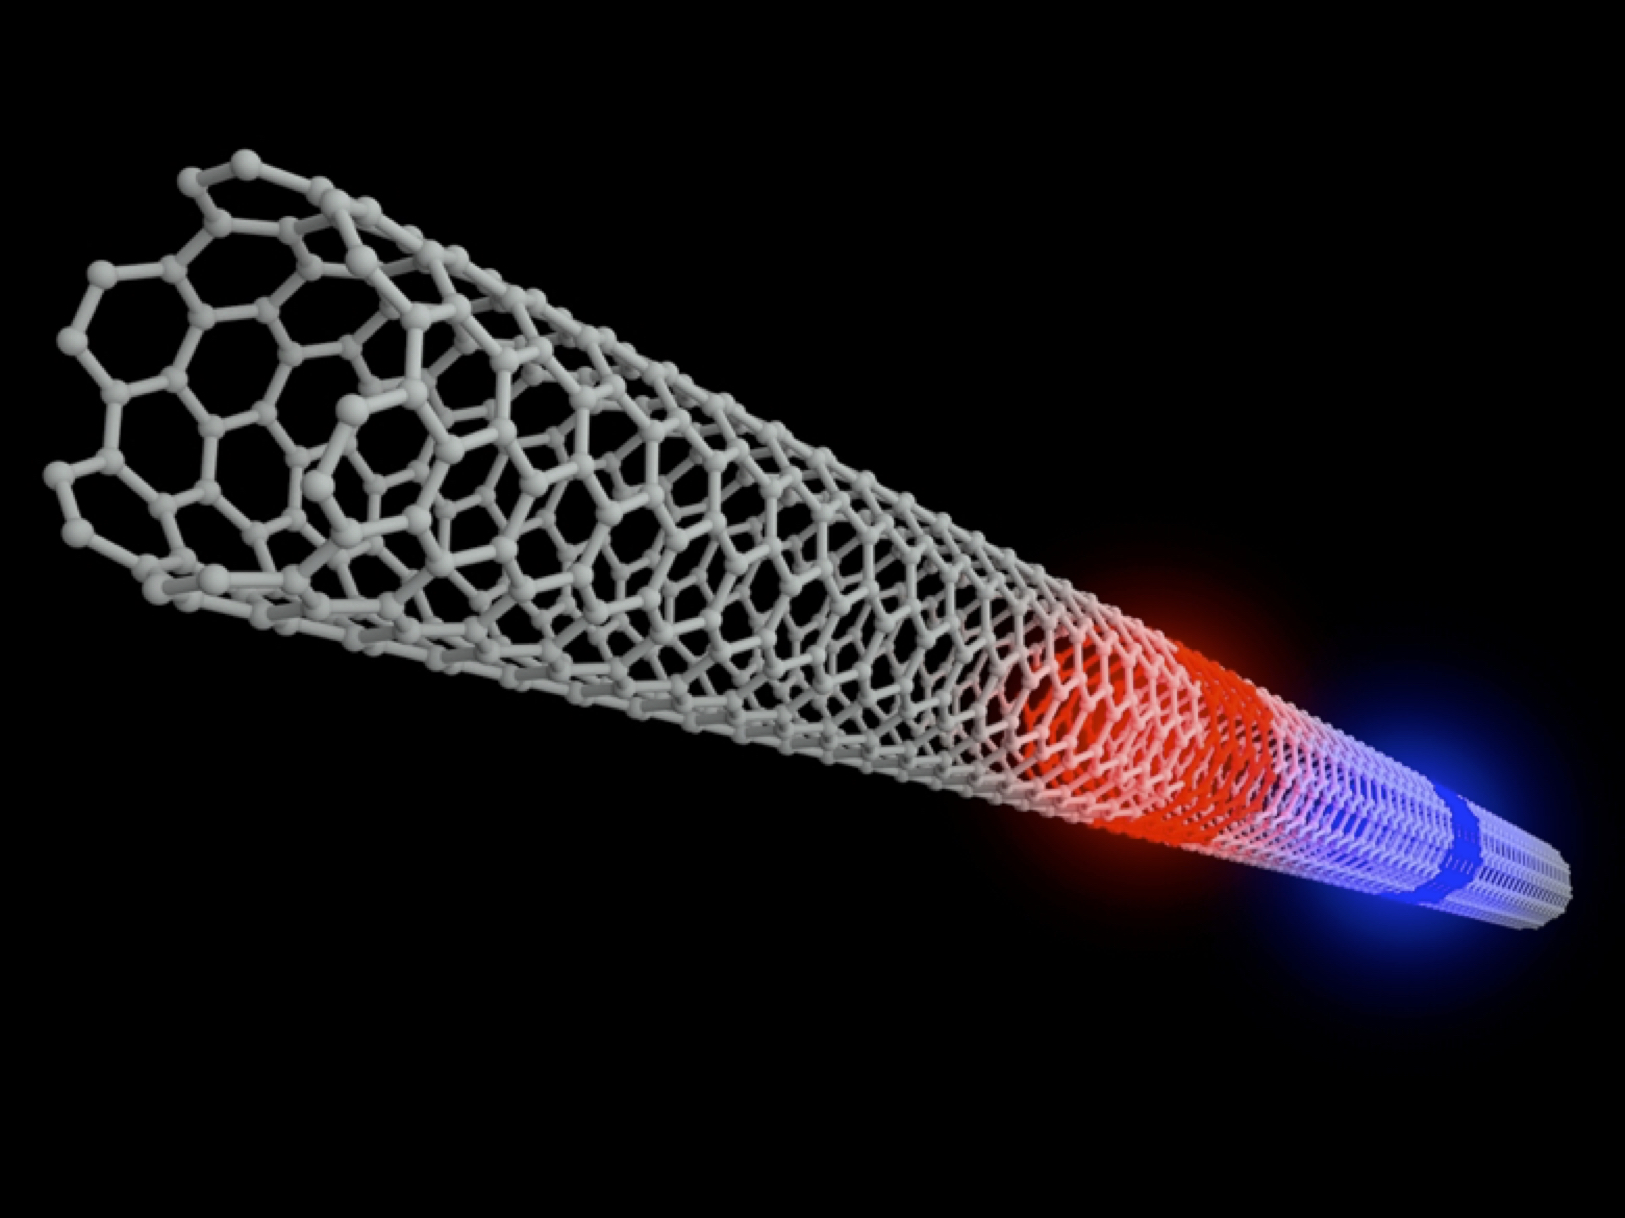  Nuovo stato della materia scoperto nei nanotubi di carbonio